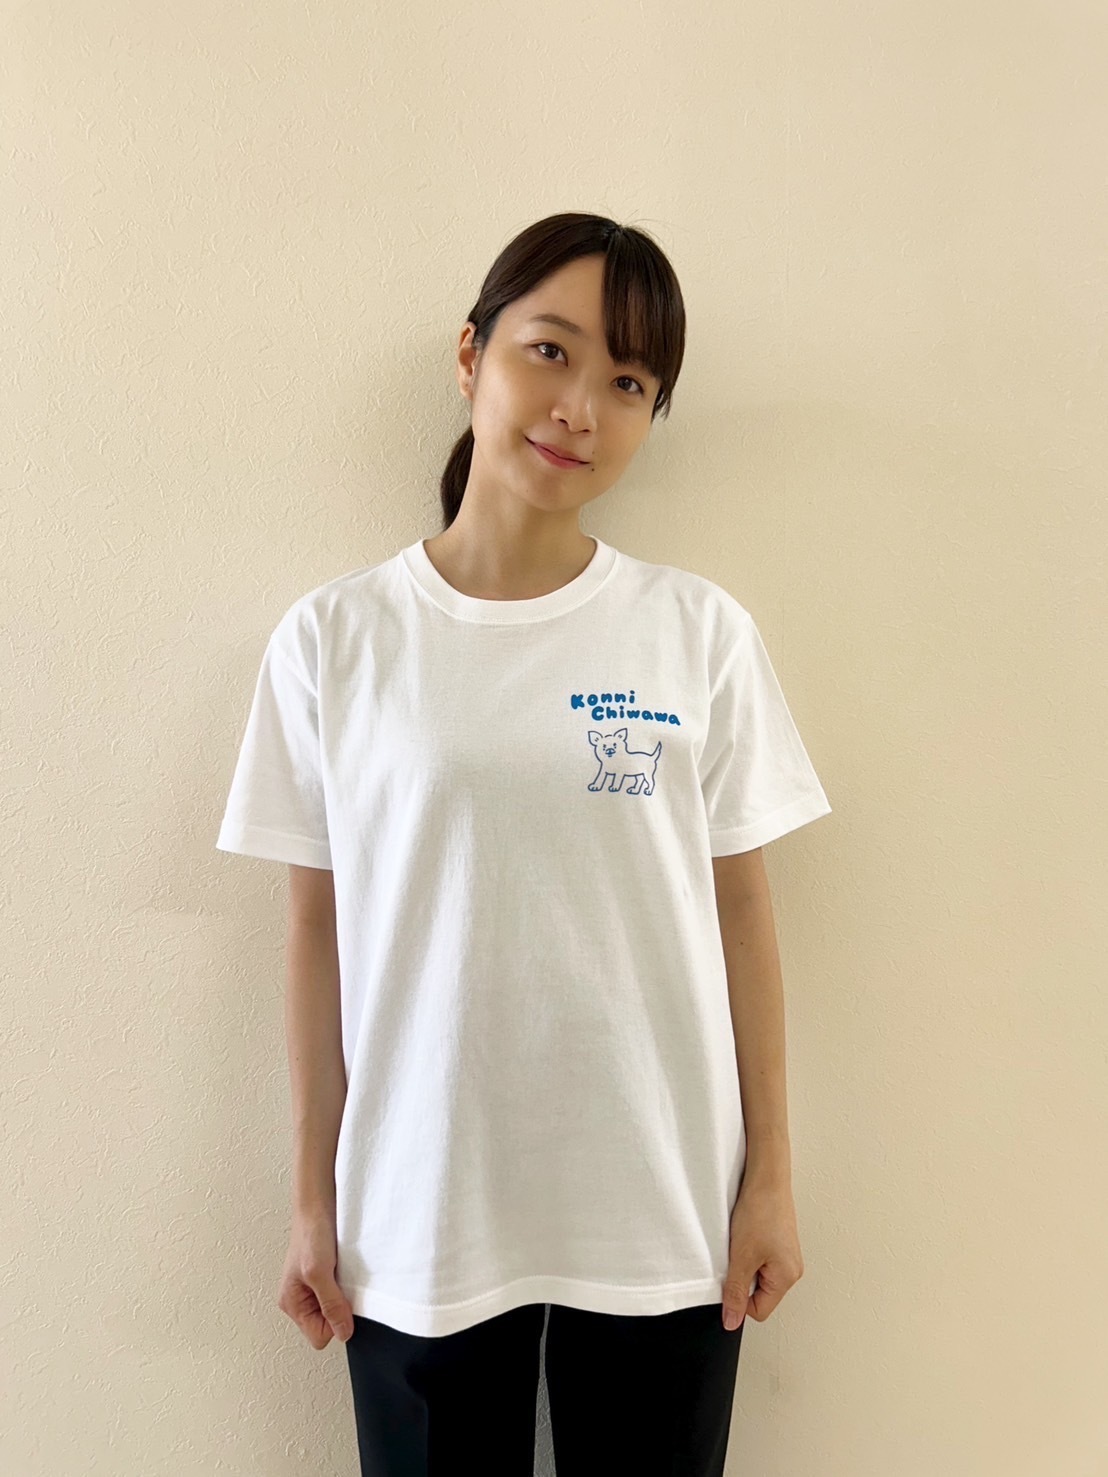 KonniChiwawa Tシャツ